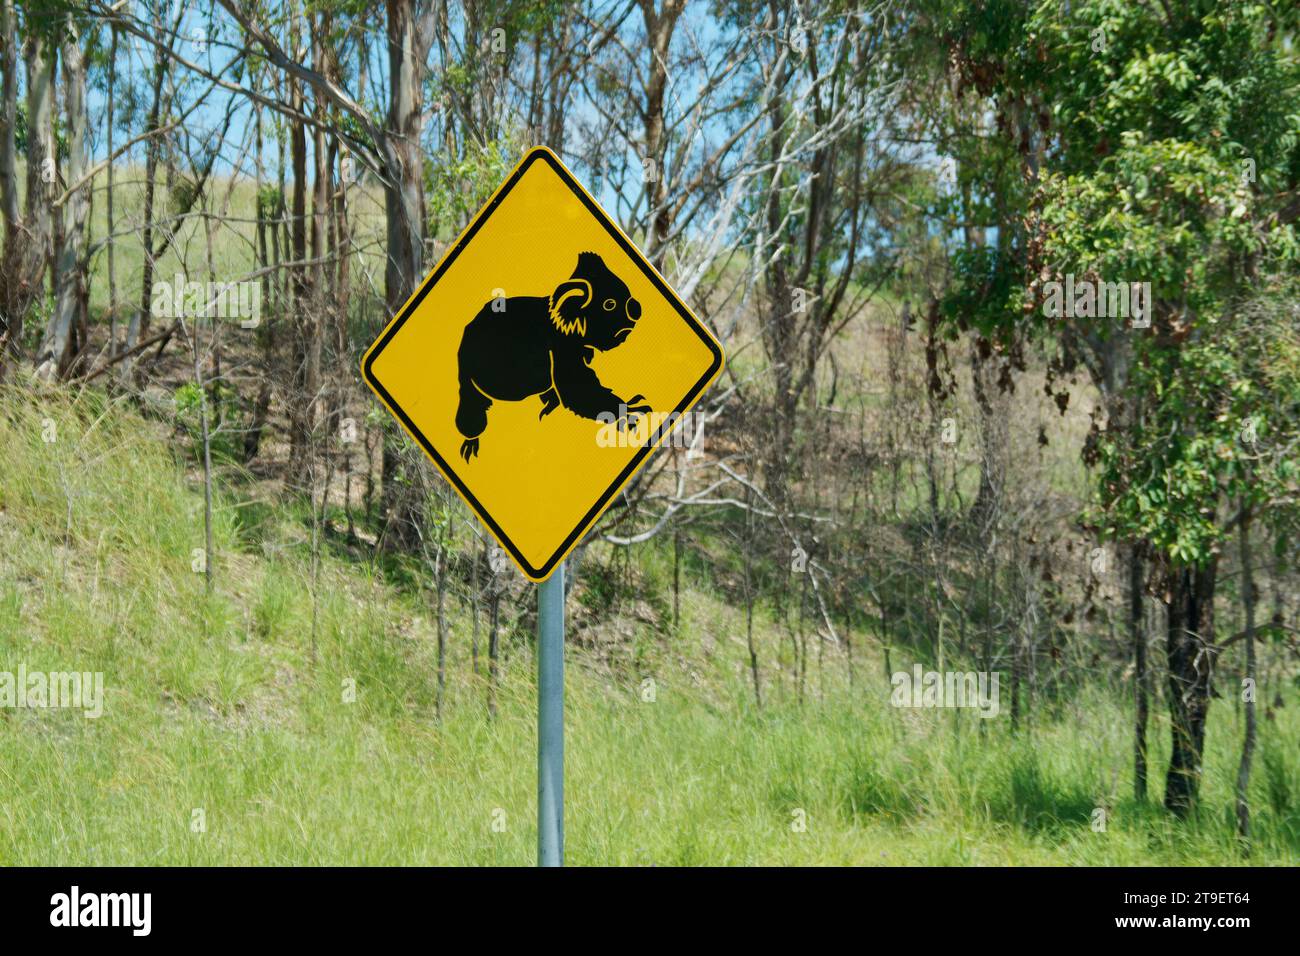 Verkehrsschild Koala - Phascolarctos cinereus in der australischen Bergwaldlandschaft. Gelbes Verkehrsschild mit dem schwarzen Silhouettensymbol des Wildli Stockfoto